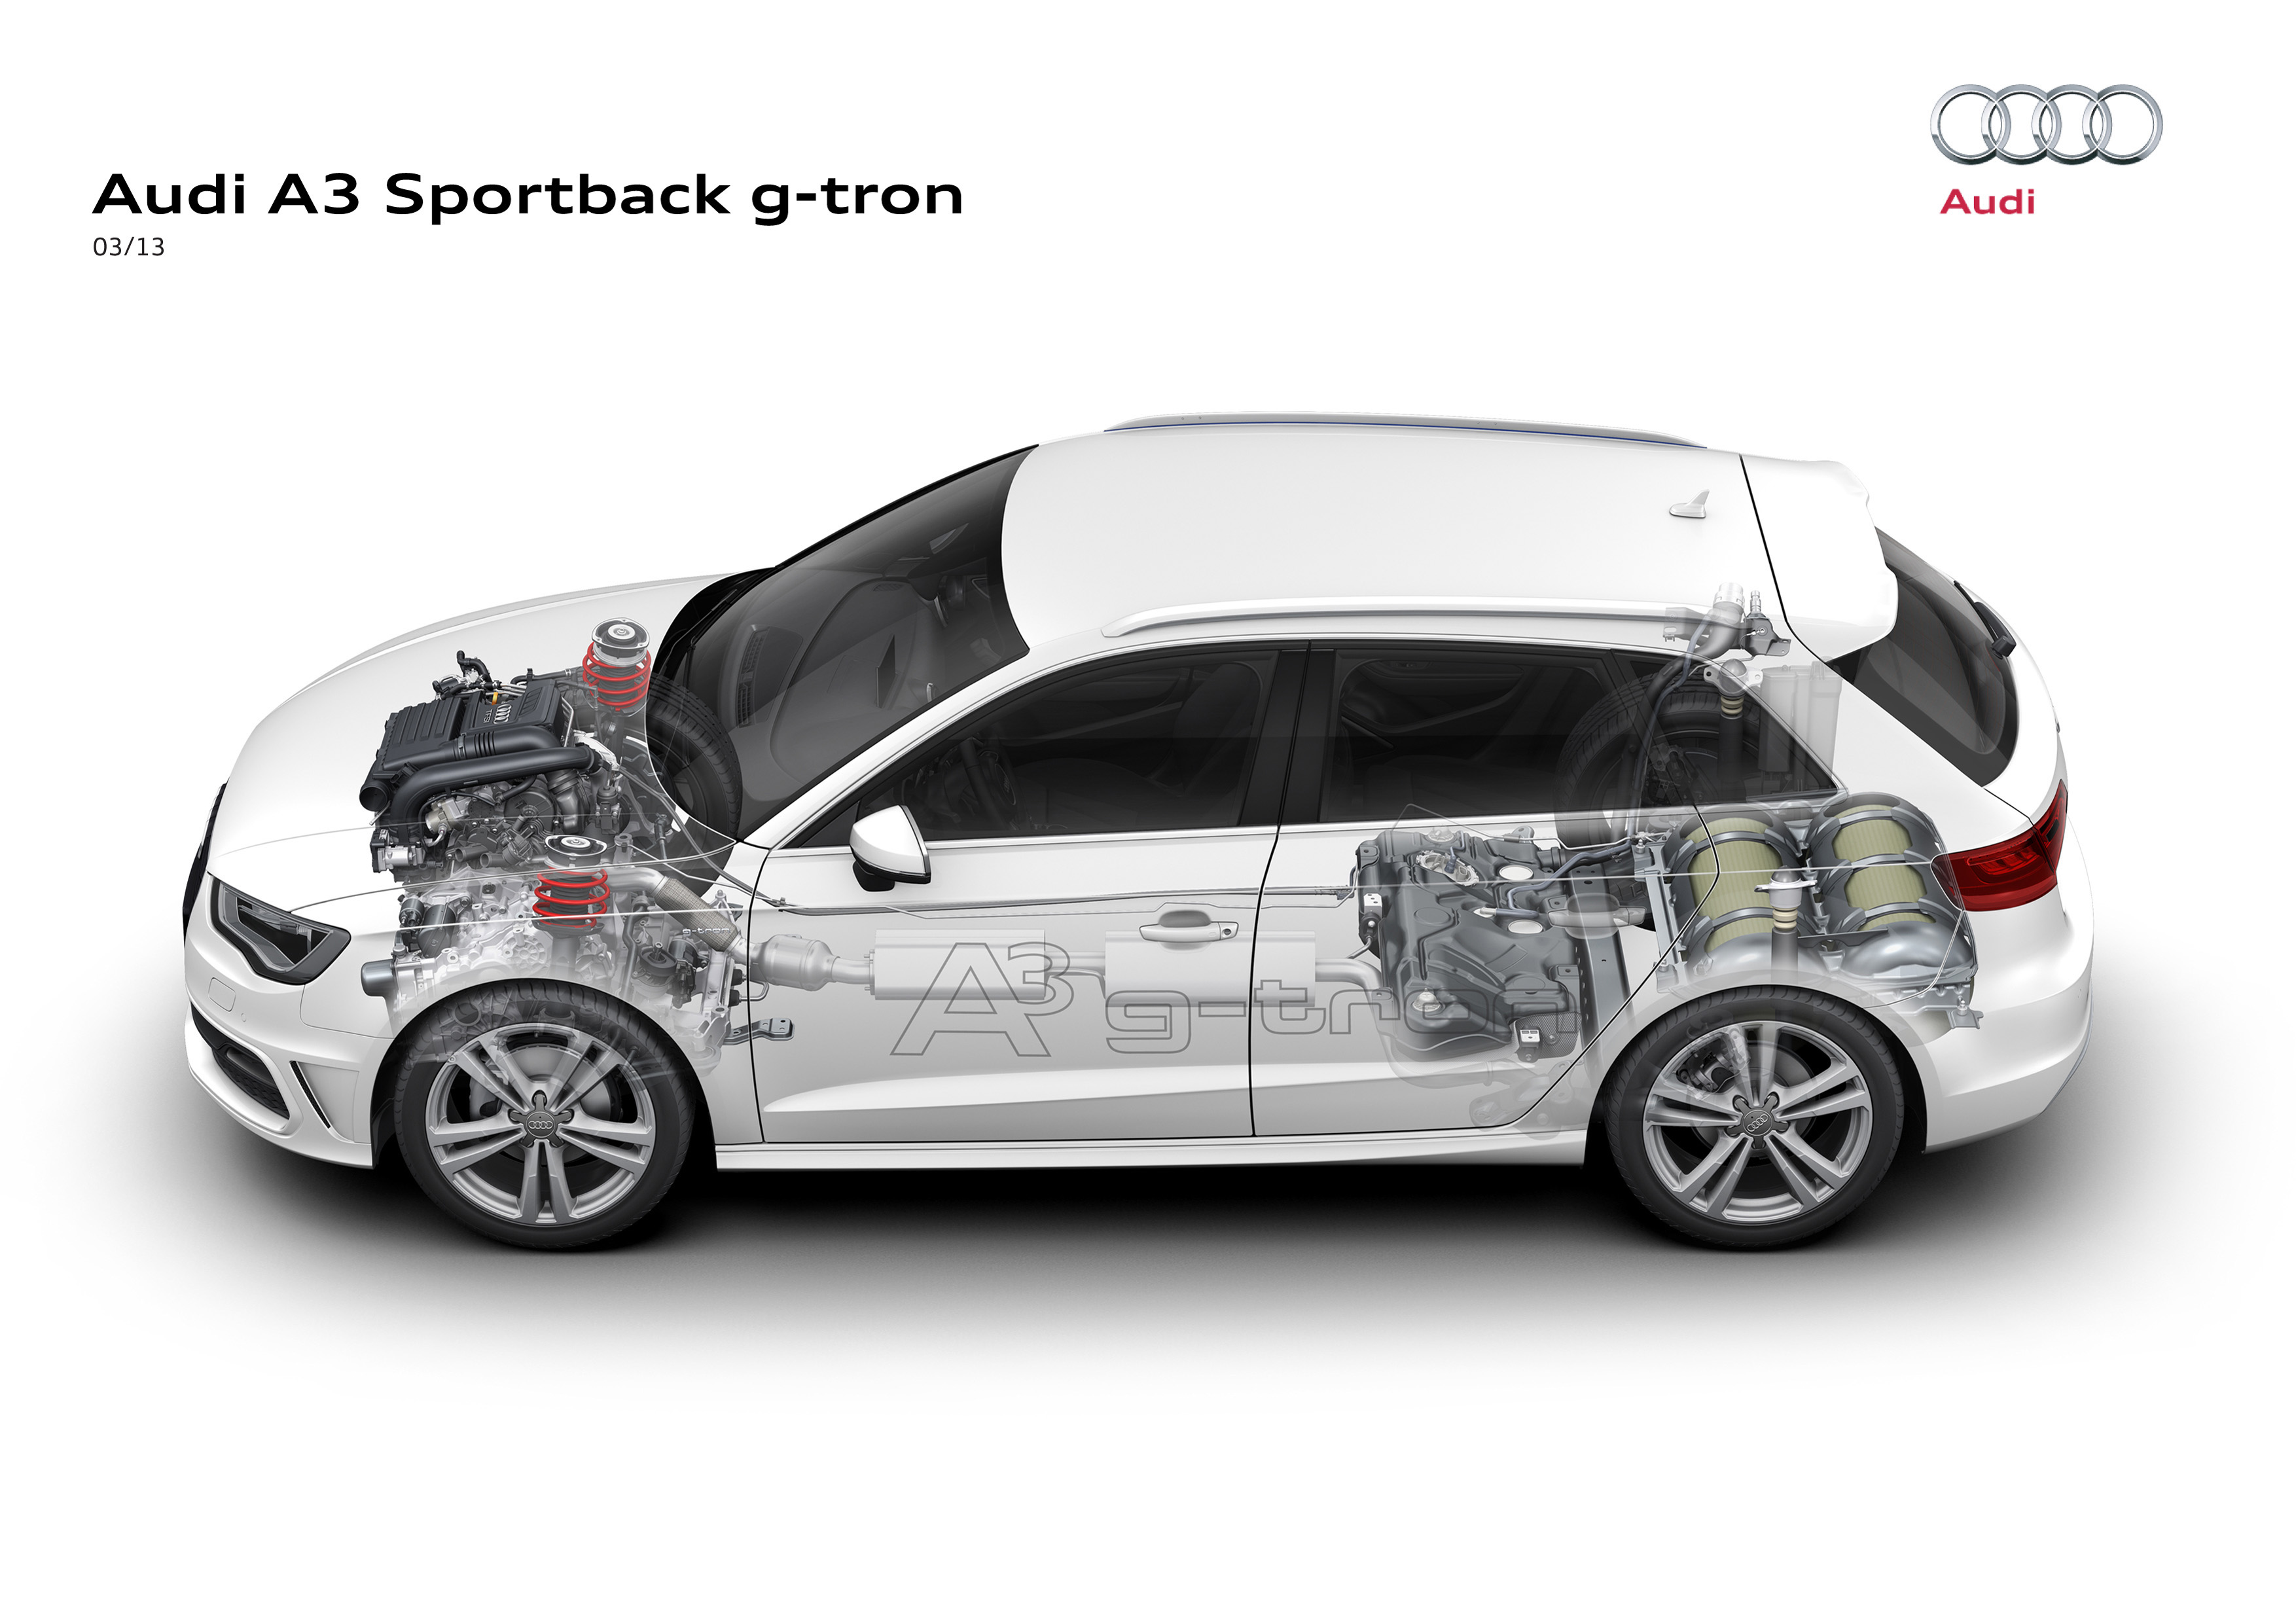 Audi A3 Sportback g-tron modern big